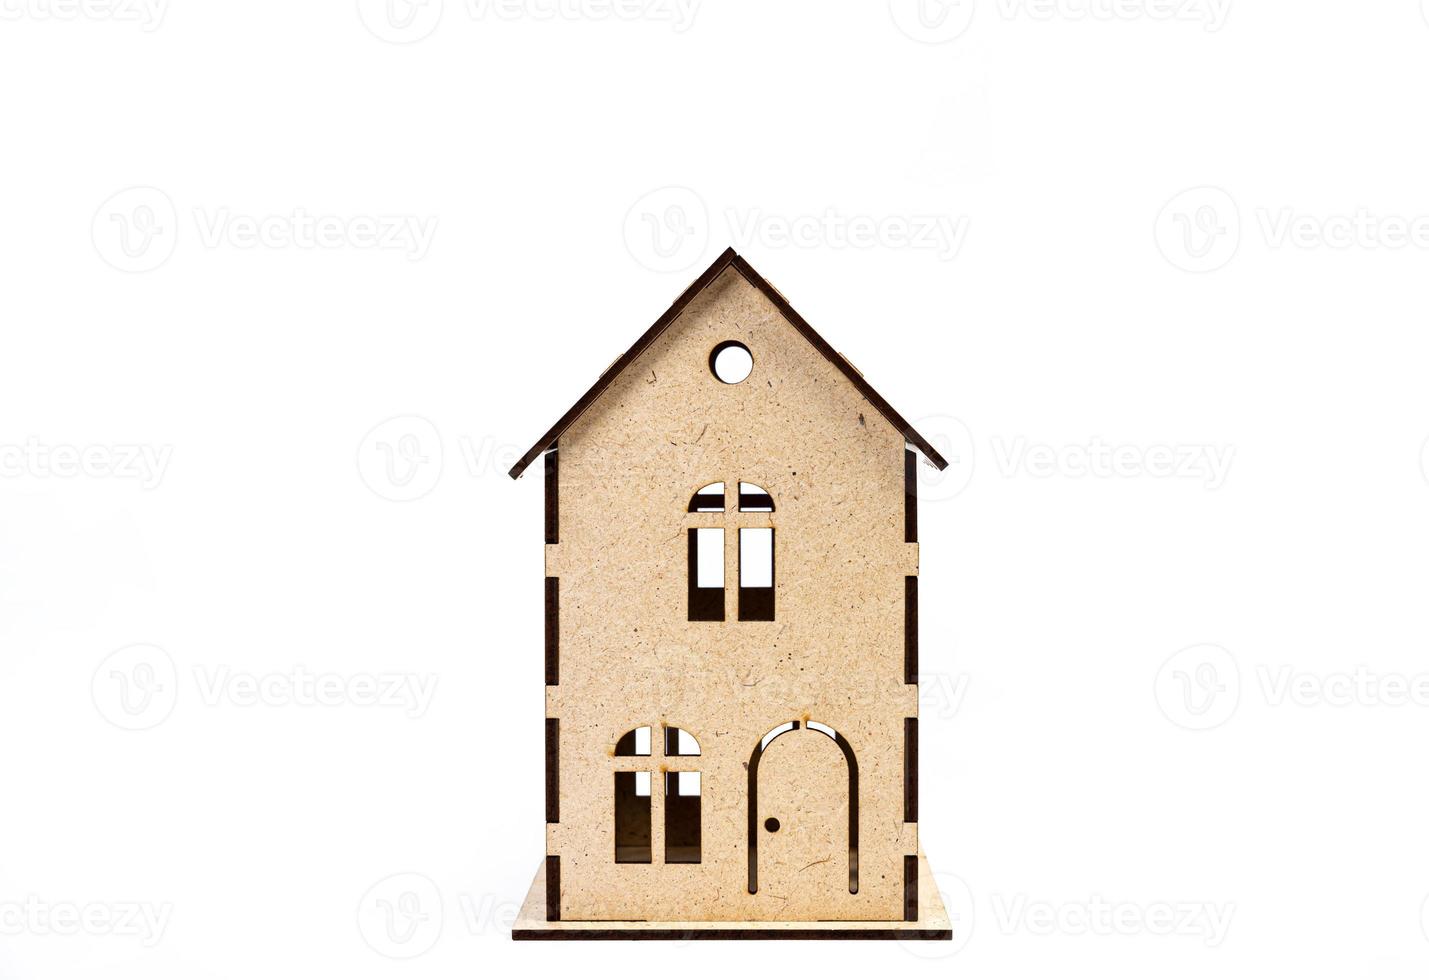 Haussymbol mit Metallschlüssel auf weißem Hintergrund. immobilien, versicherungskonzept, hypothek, hauskauf, immobilienmaklerkonzept, kleine autos, bäume foto